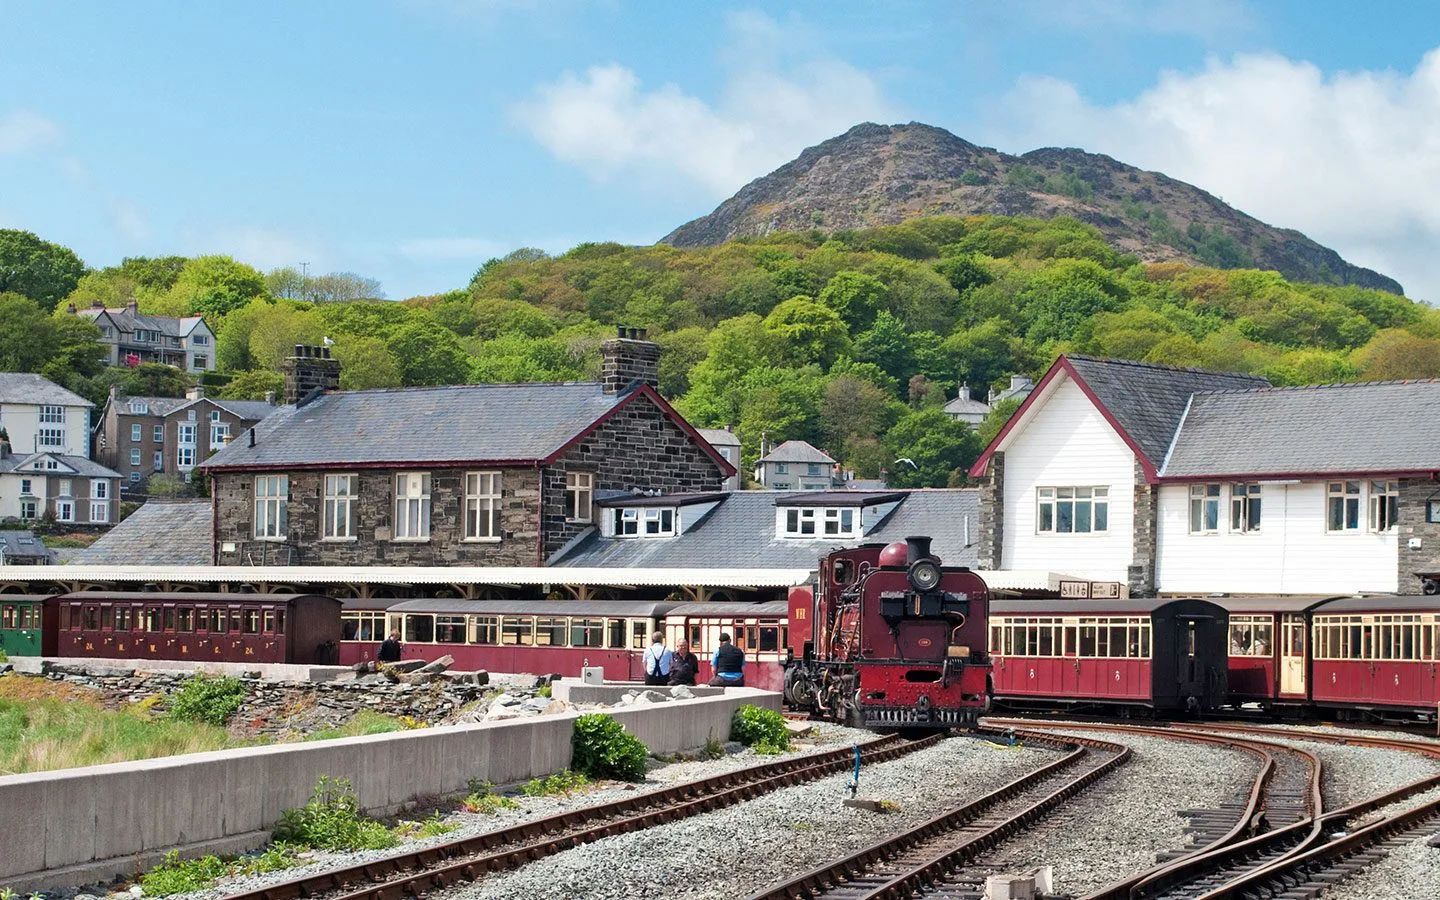 The Ffestiniog Railway on a Wales by train trip